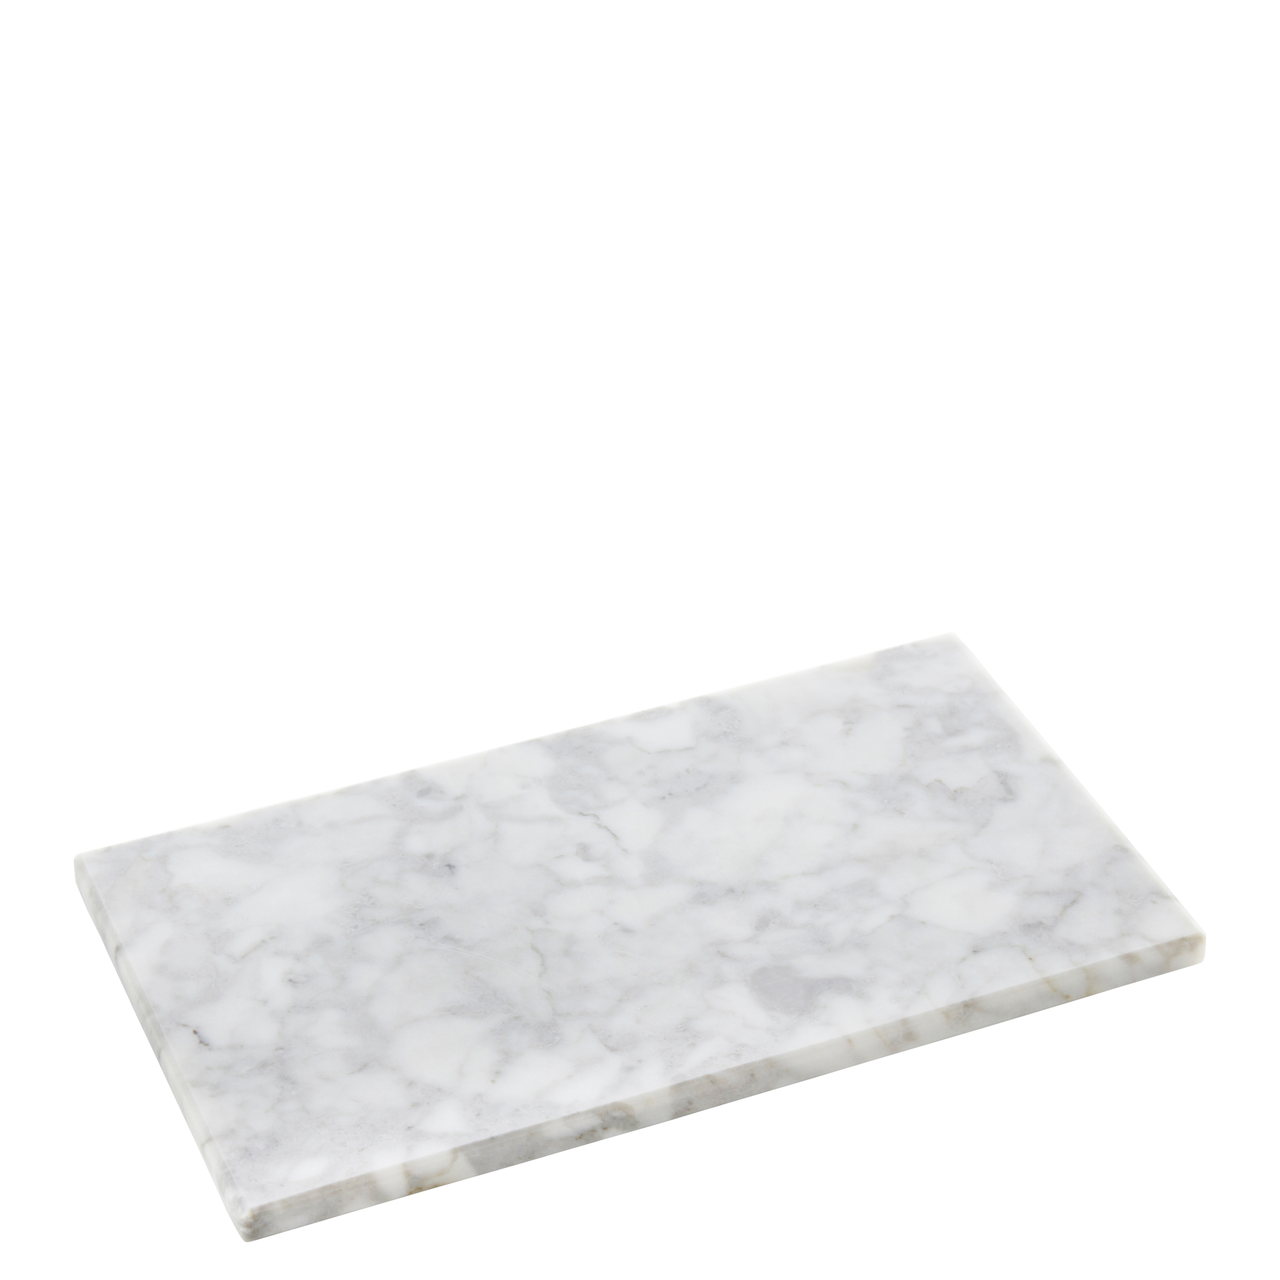 Plate marble white 28x16x1,2cm